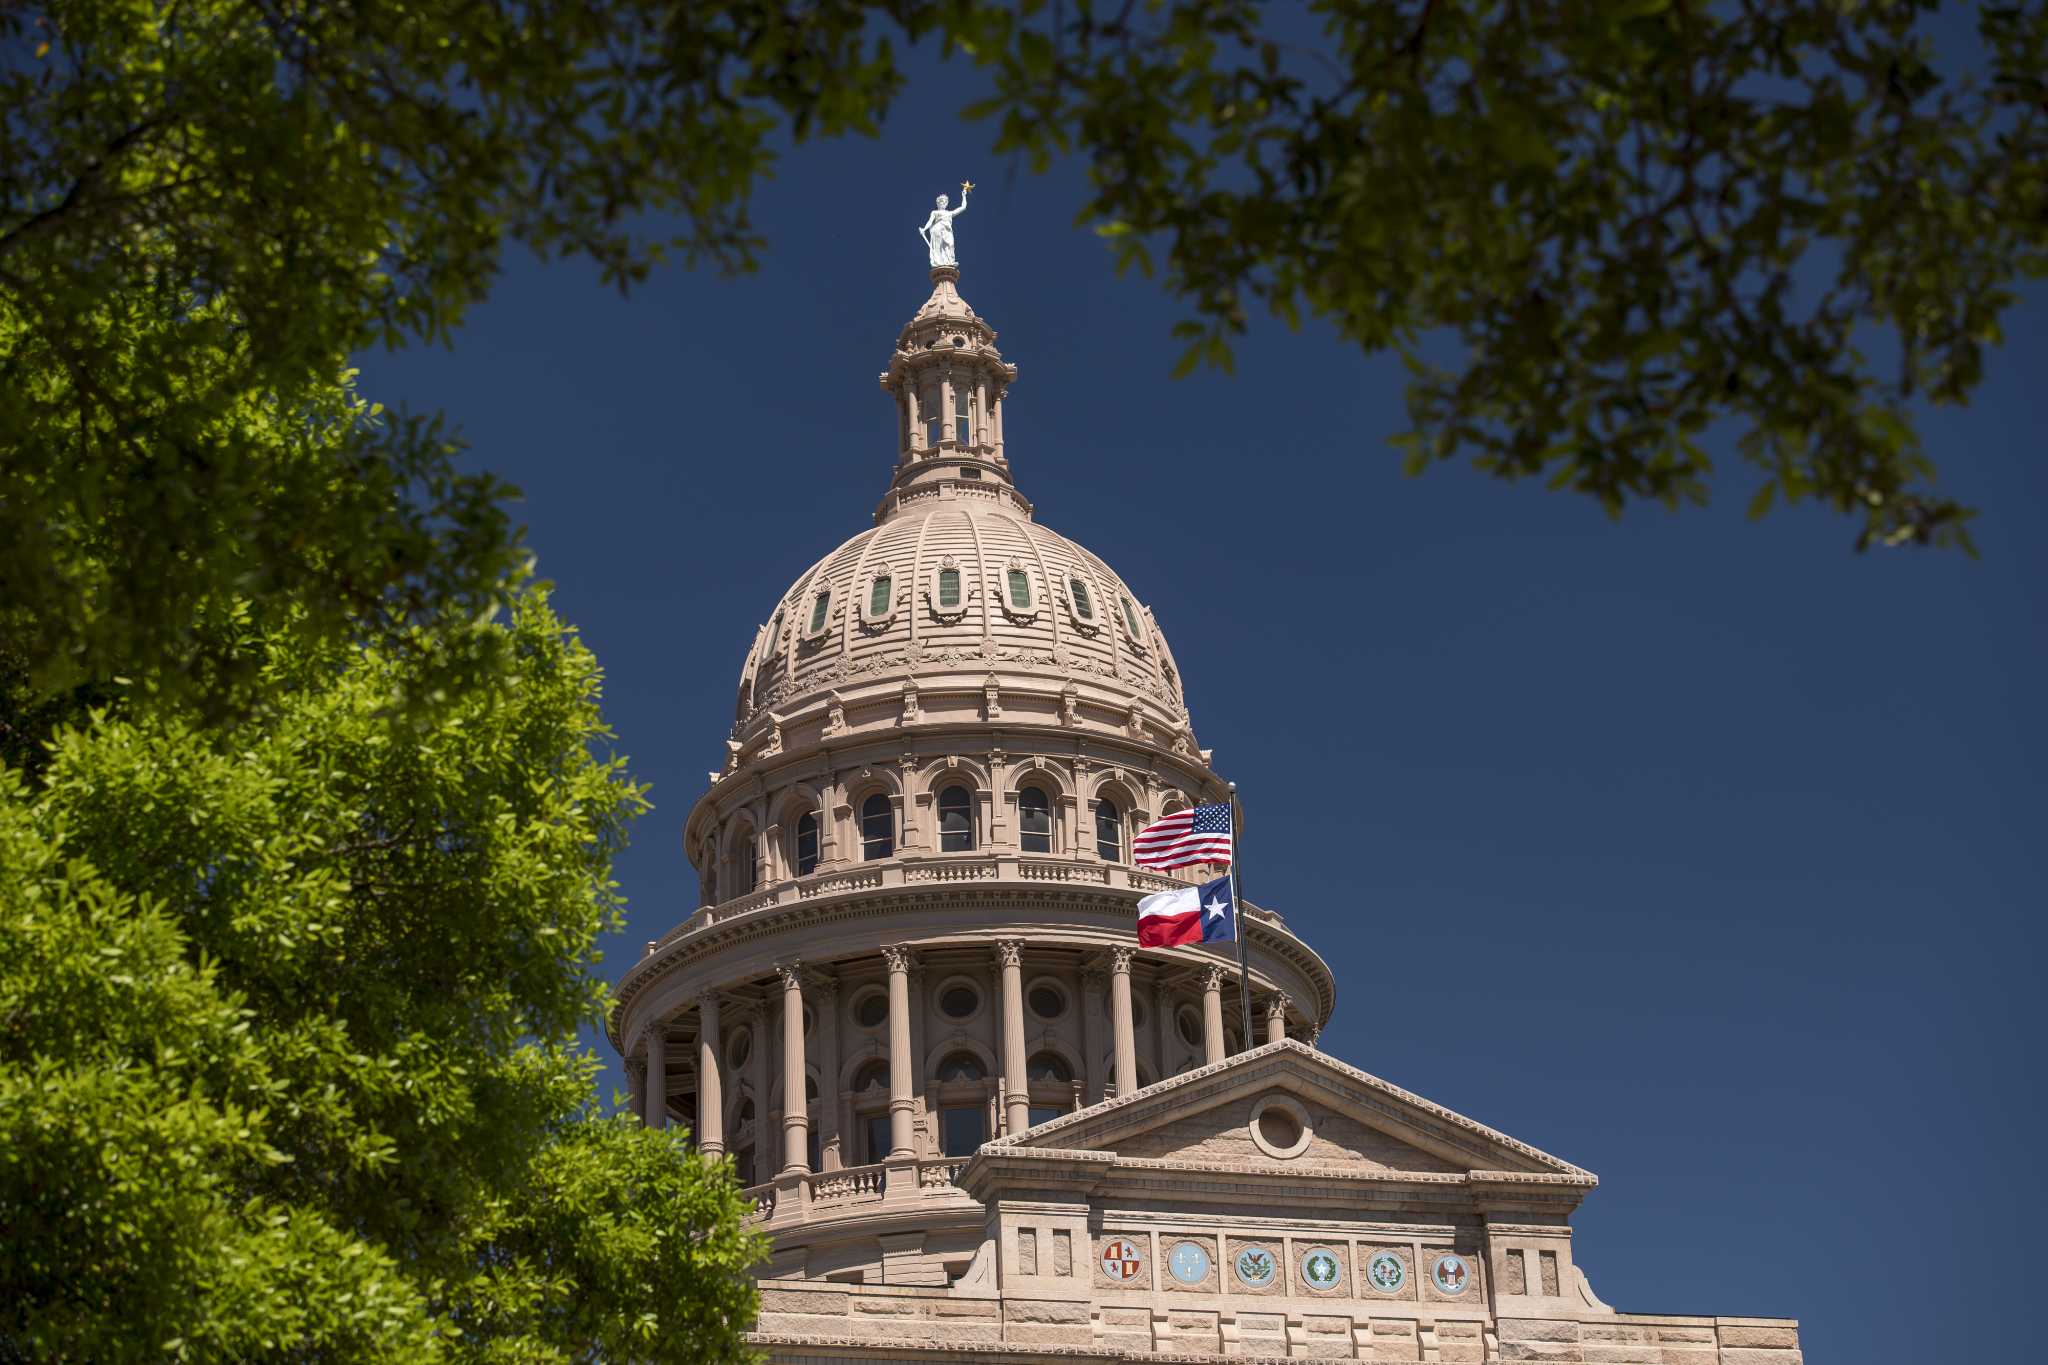 Higher education cuts advance through Texas senate